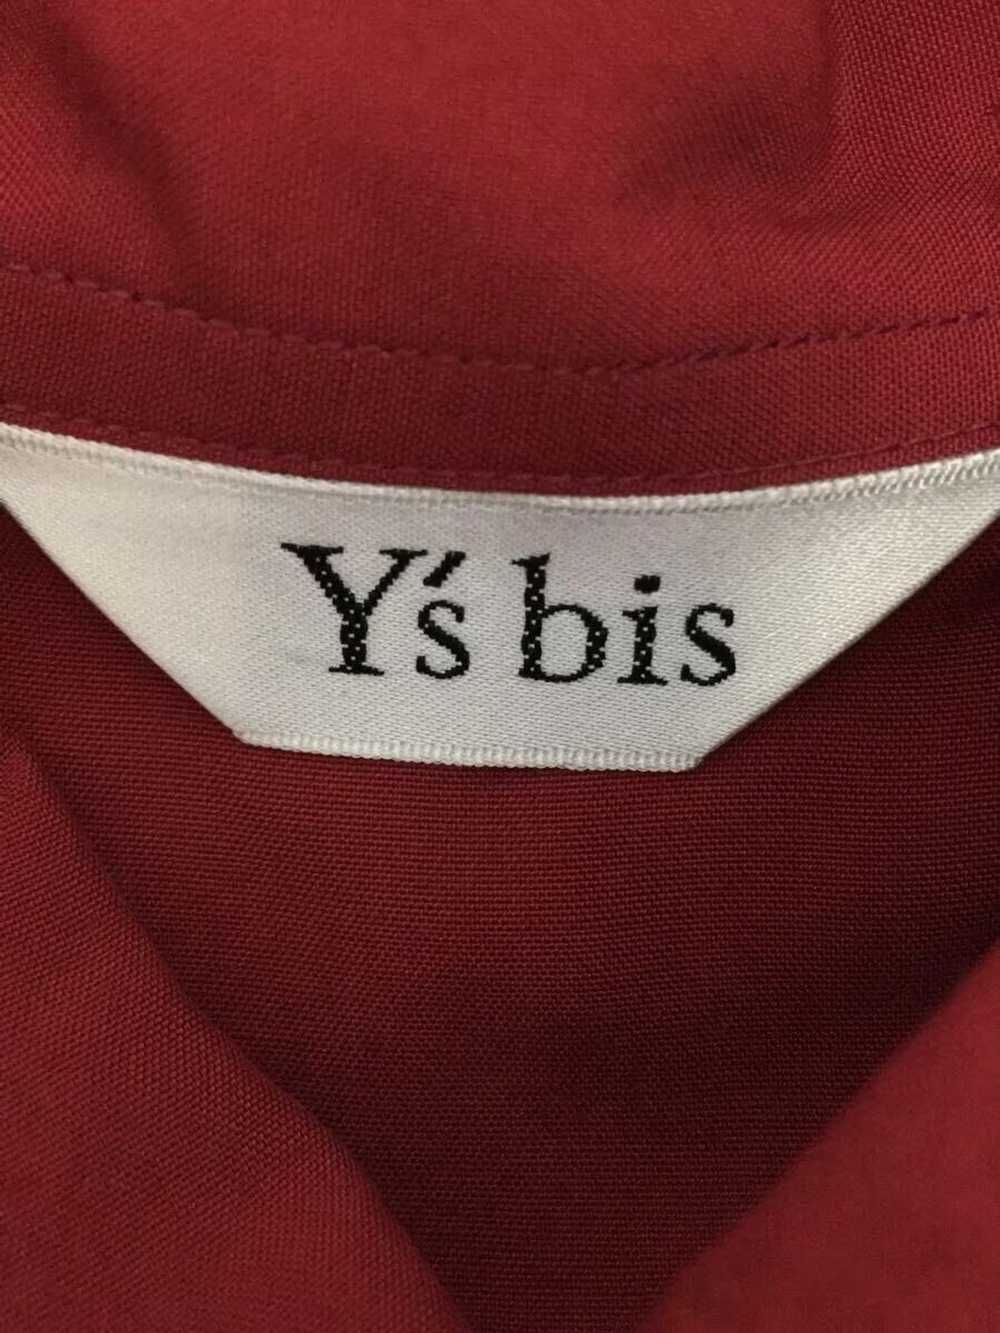 Yohji Yamamoto × Ys (Yamamoto) Double Button Shirt - image 5